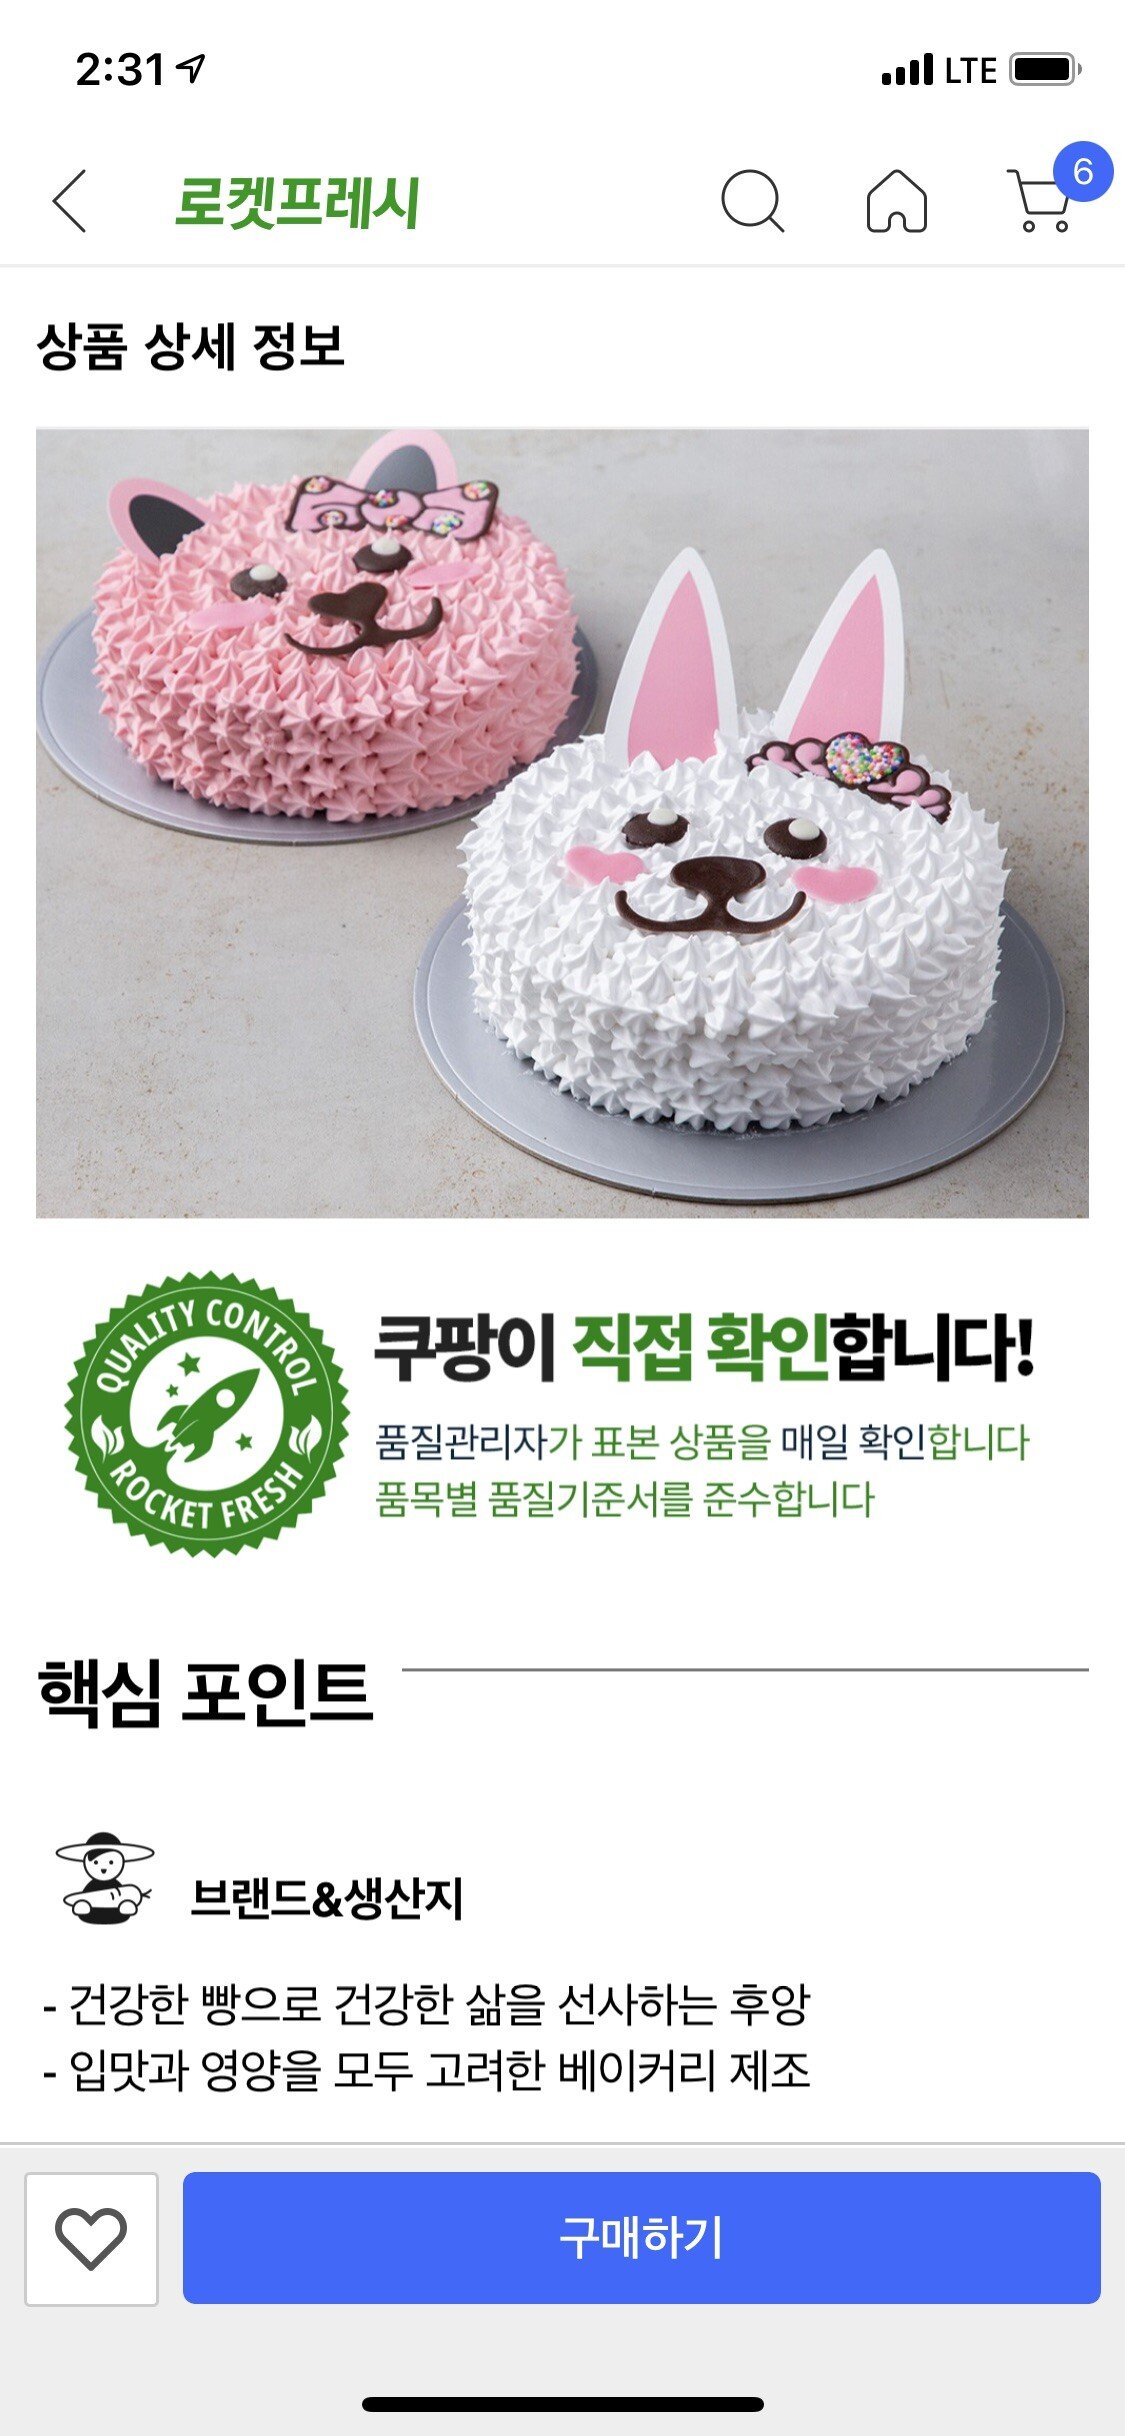 쿠팡에서 판매하는 동물 케이크 만들기 키트.JPG